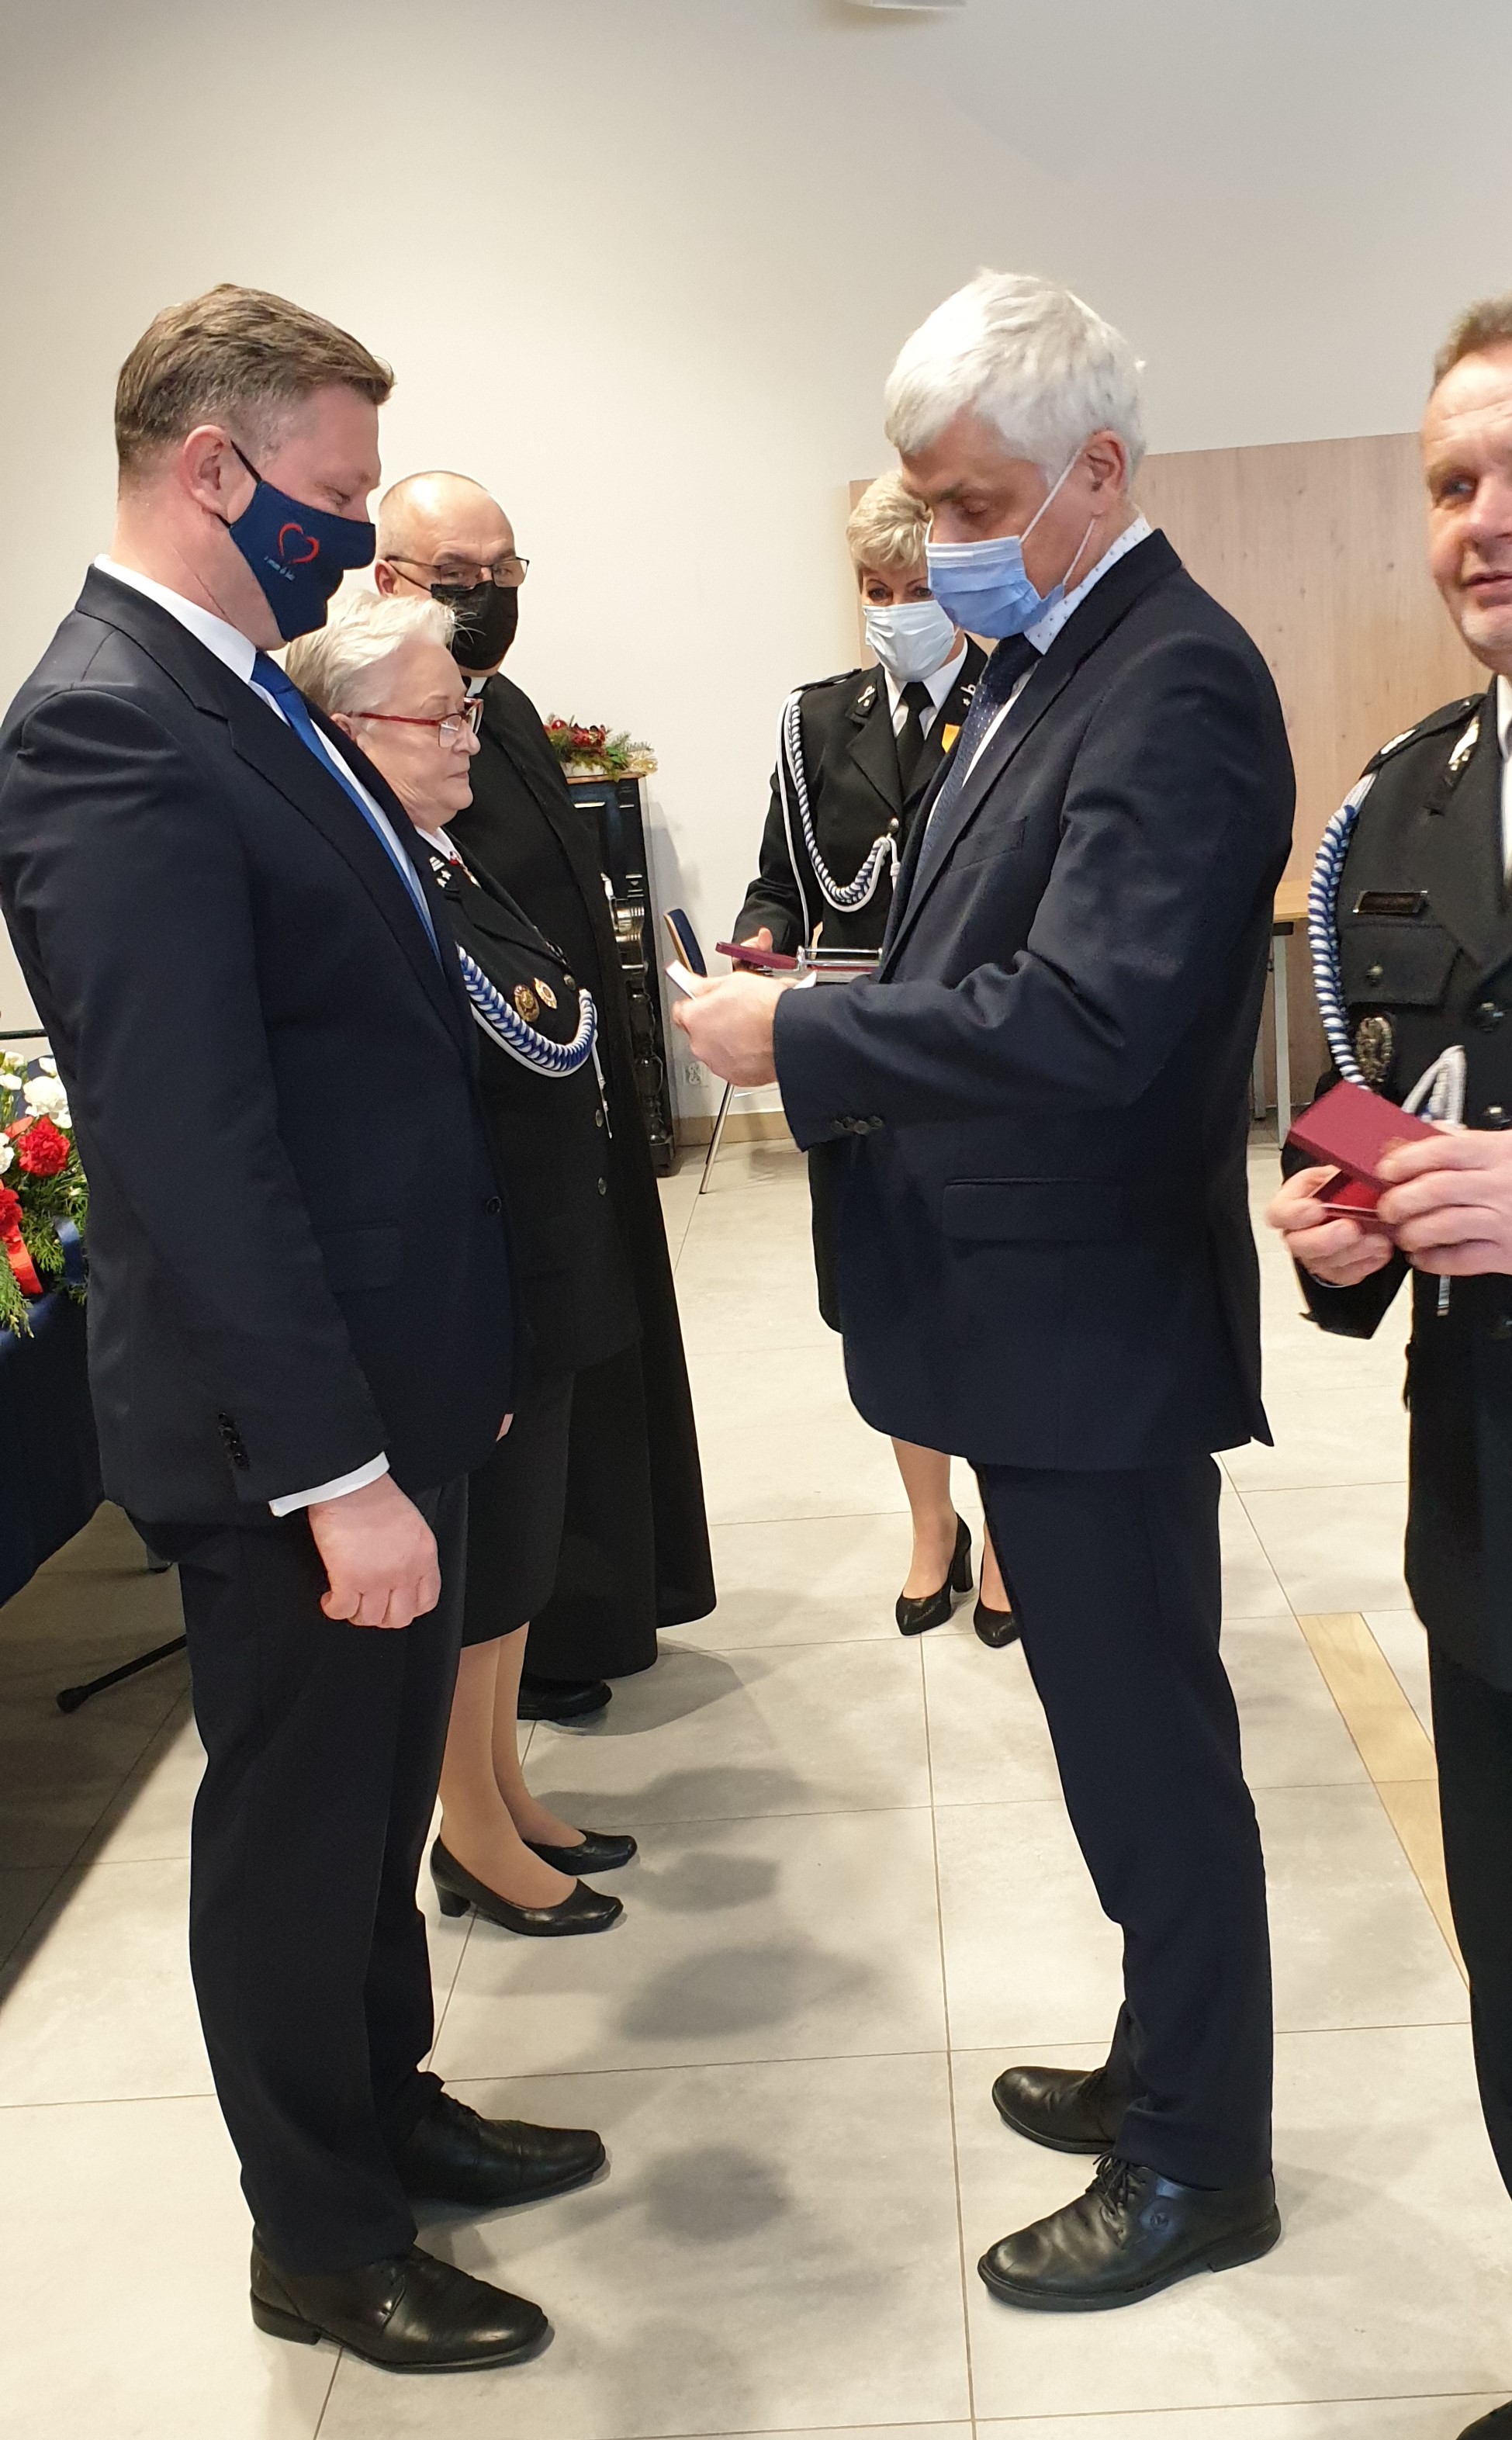 Wojewoda przyznaje medal Staroście Powiatu Białostockiego